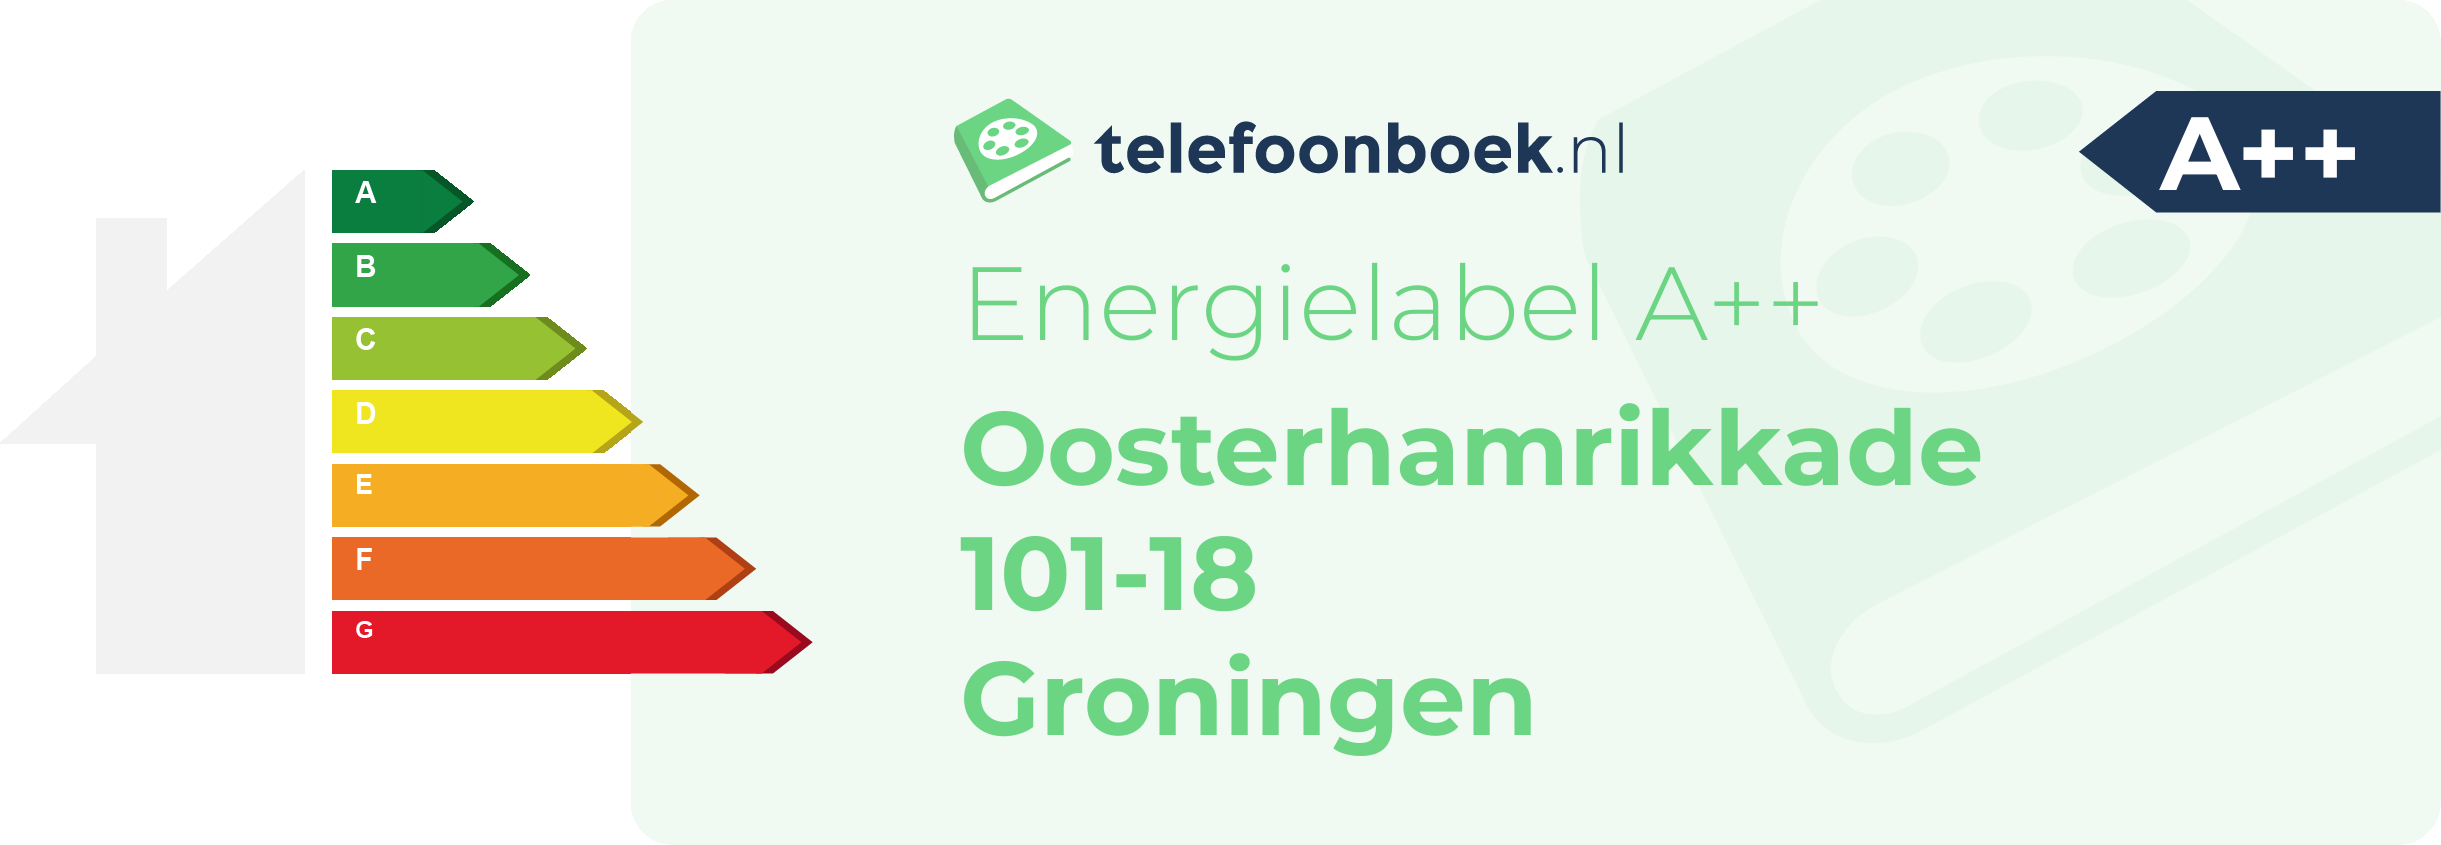 Energielabel Oosterhamrikkade 101-18 Groningen